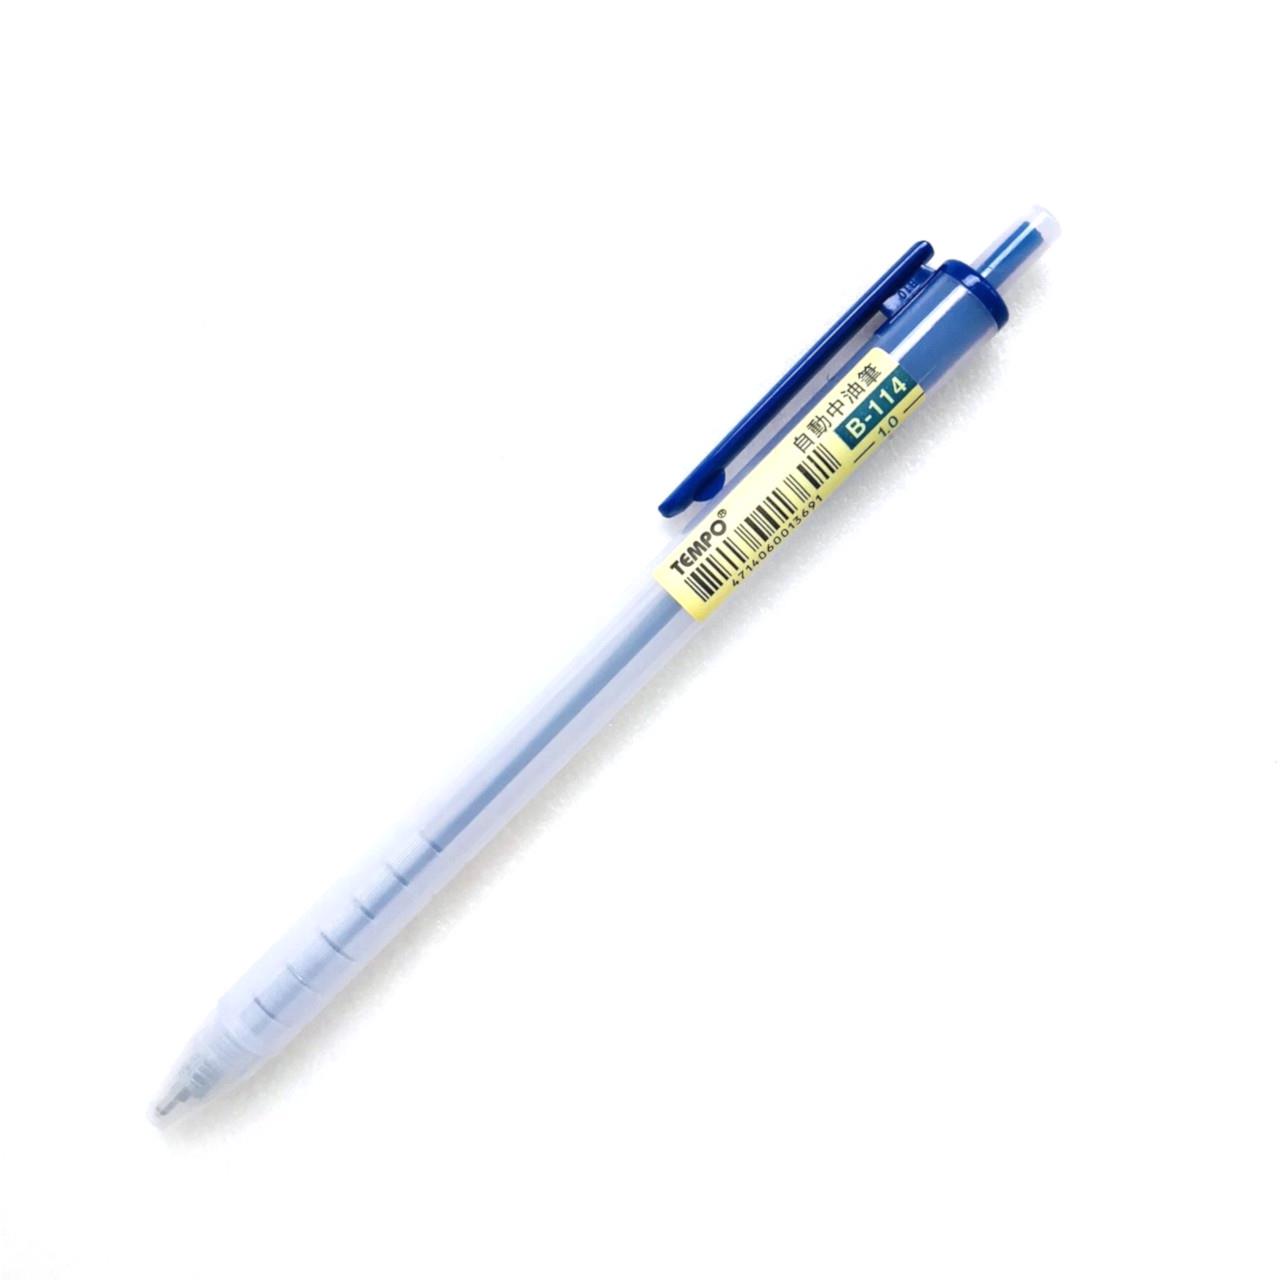 節奏 霧桿中油筆 B-114 1.0 (藍色)